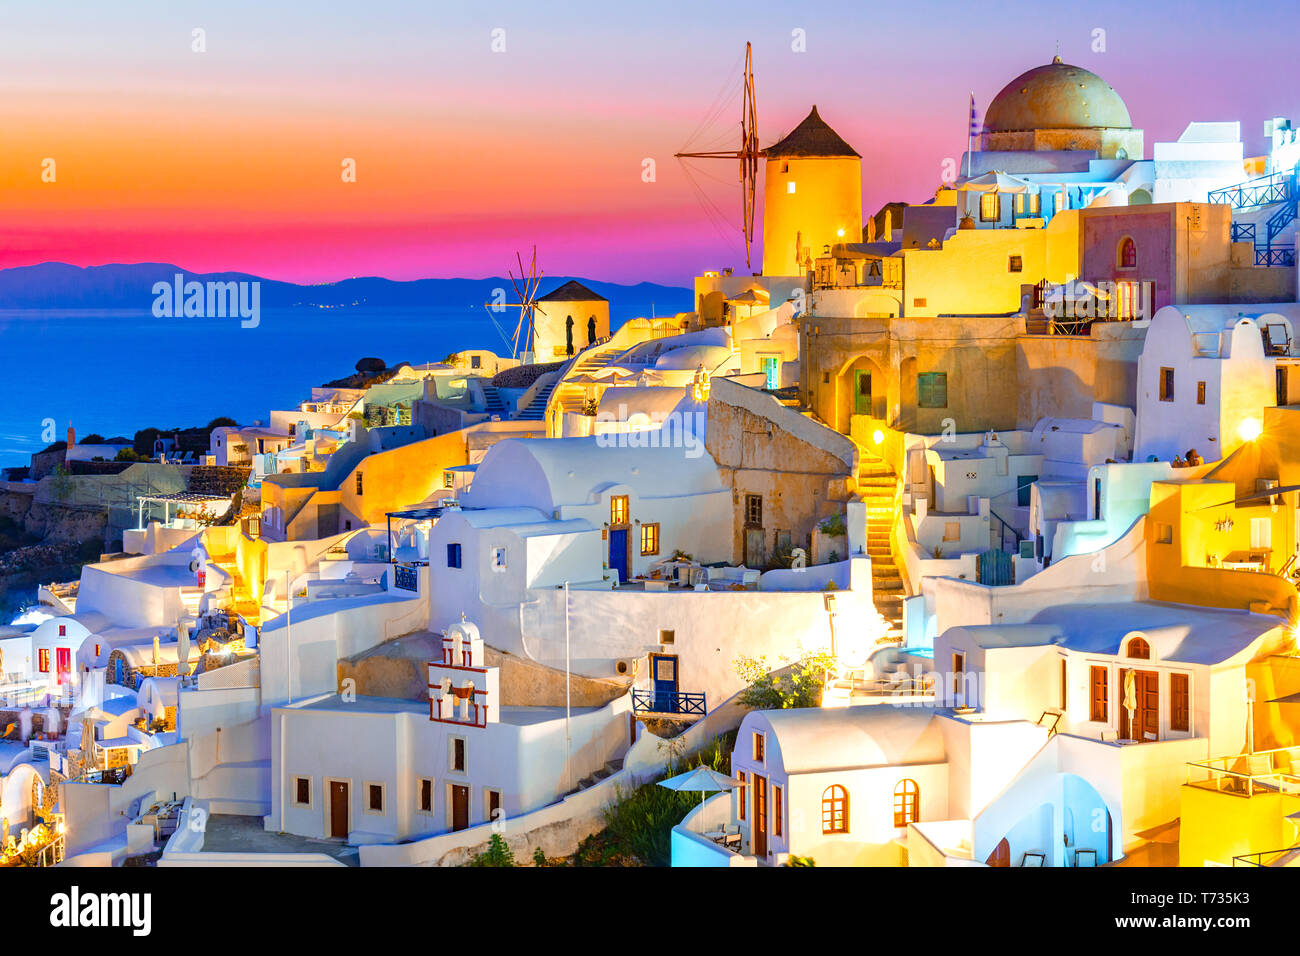 Tramonto a Oia - Santorini Island, Grecia al tramonto. Tradizionale e famose case bianche e chiese con le cupole blu sulla Caldera, il mare Egeo. Foto Stock